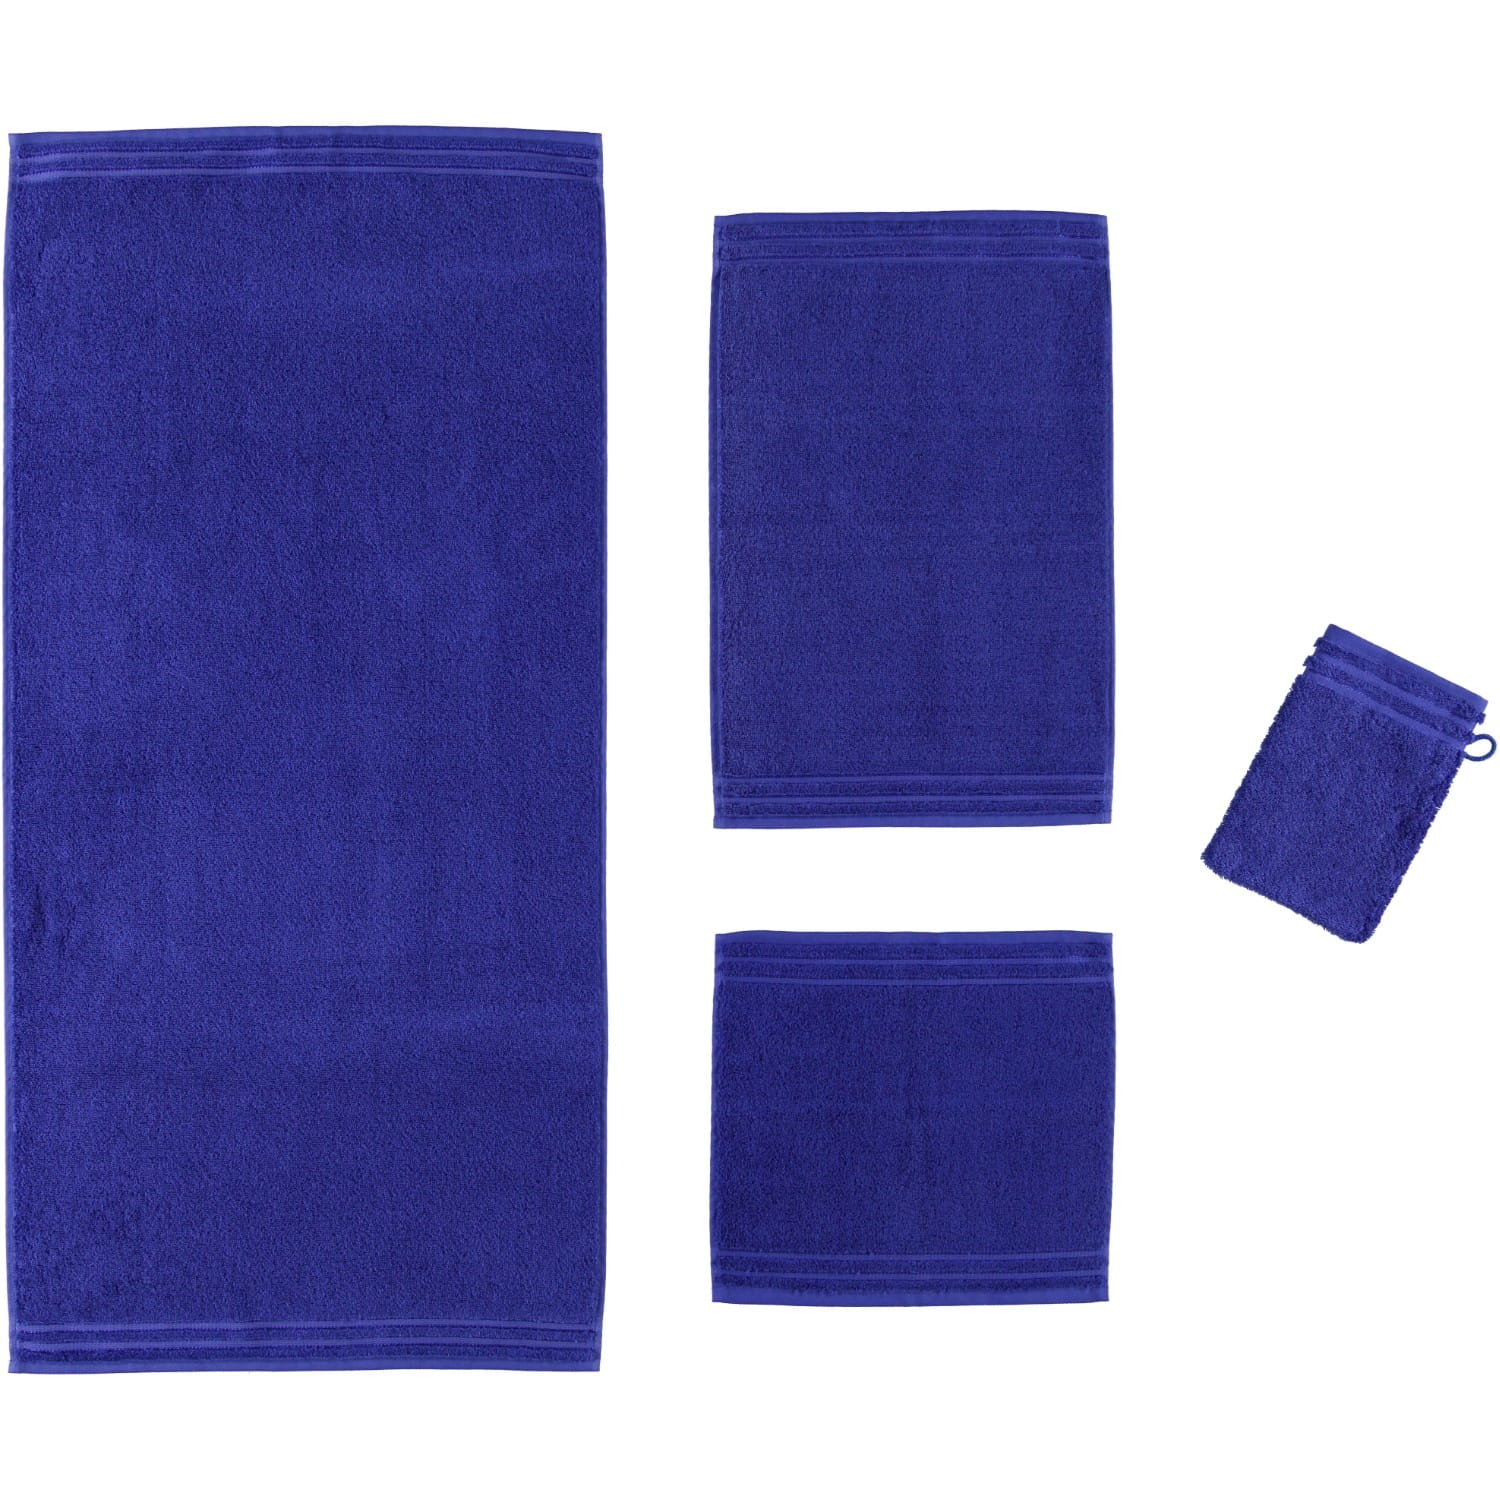 Vossen Calypso Feeling - Farbe: 479 - reflex blue - Gästetuch 30x50 cm |  Vossen Handtücher | Vossen | Marken